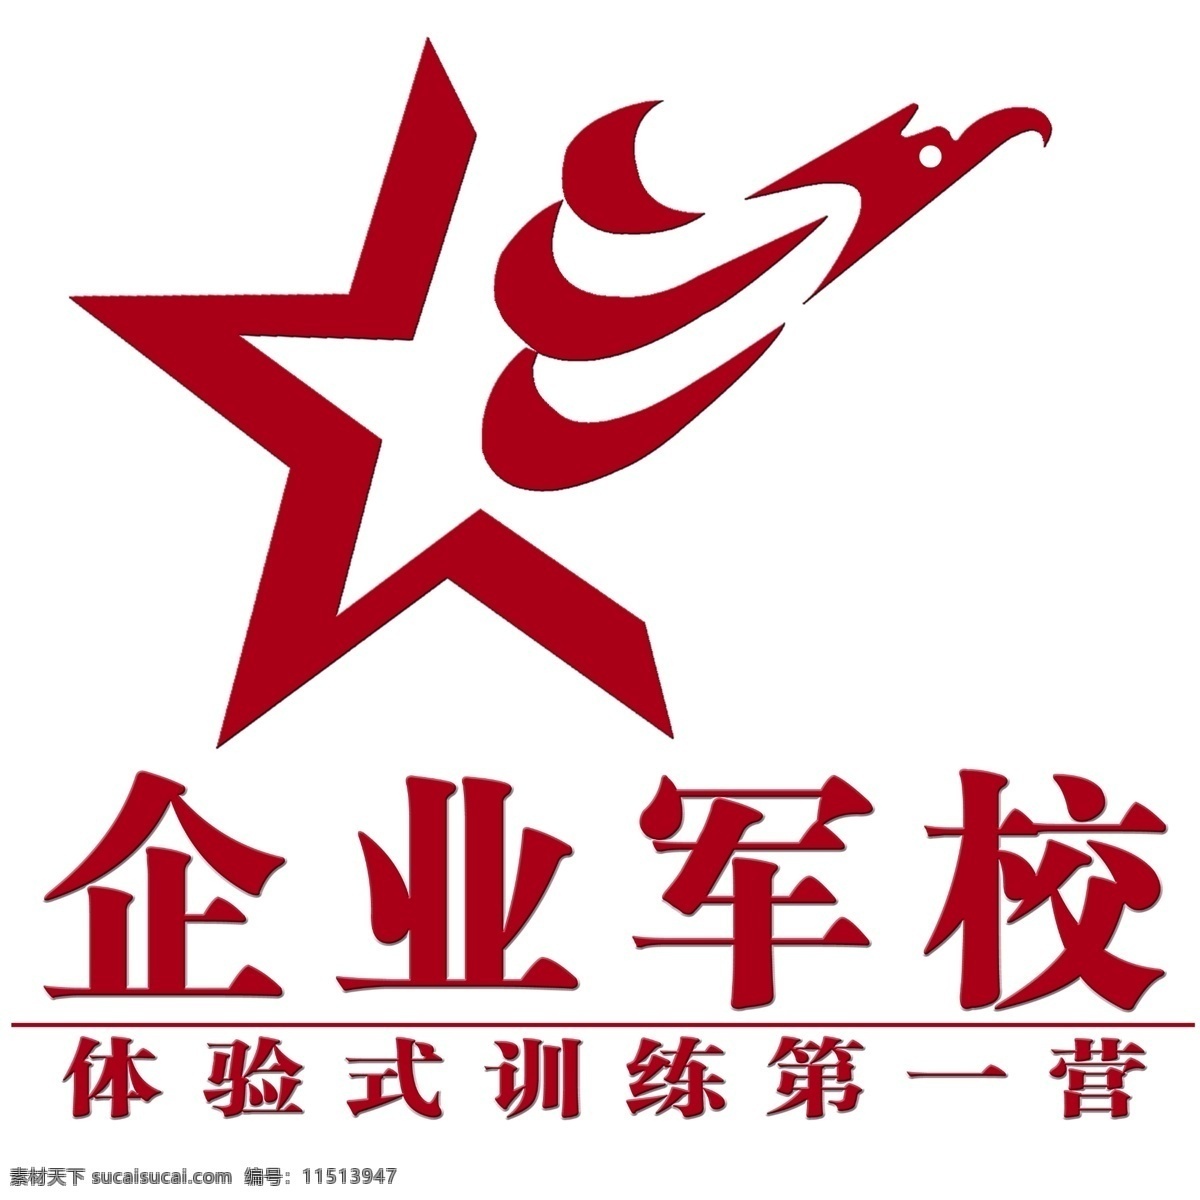 企业 军校 logo